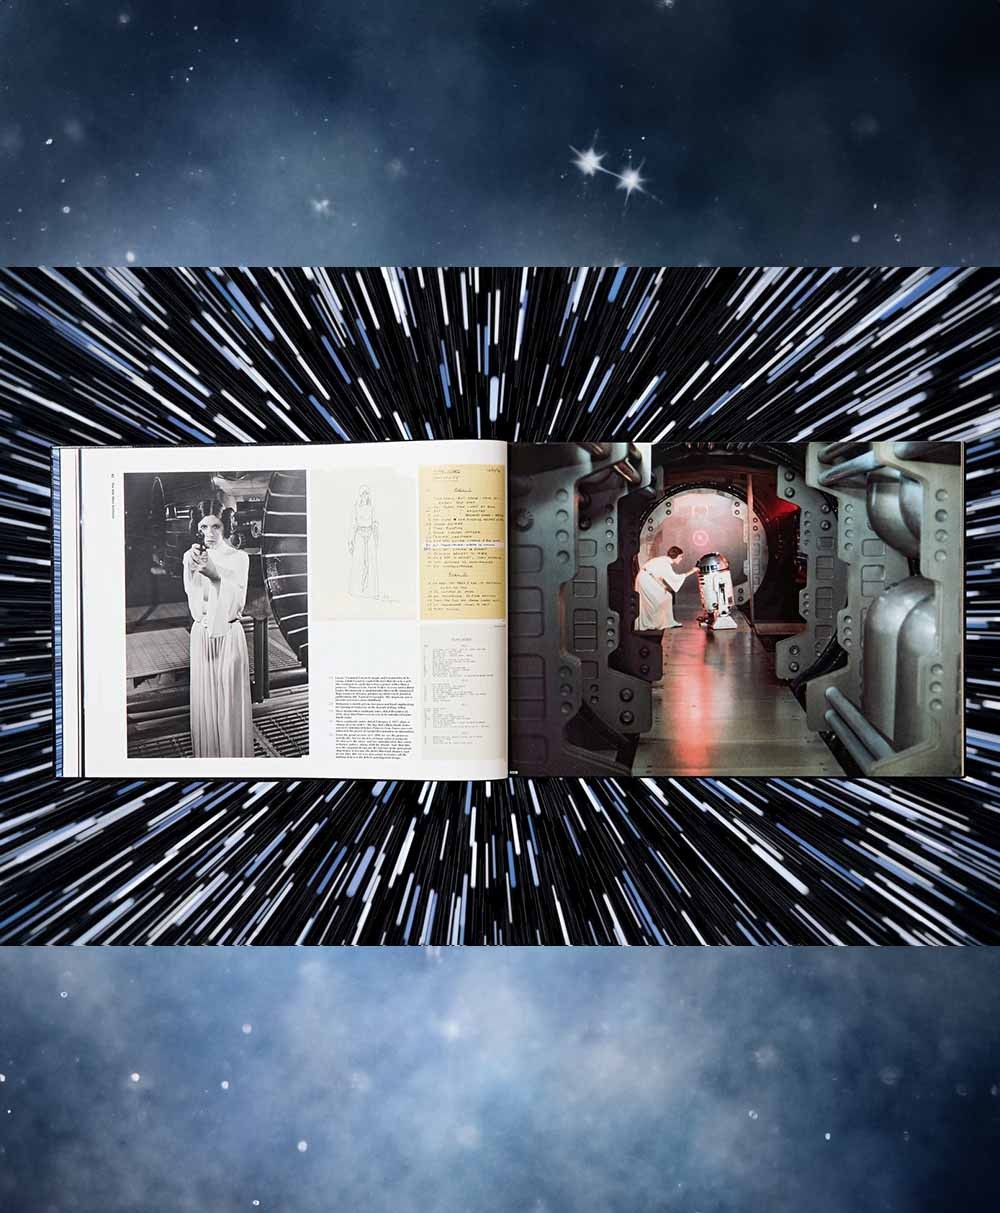 Produktbild des Bildbandes Das Star Wars Archiv. 1977–1983 Vol.1 vom Taschen Verlag - RAUM concept store